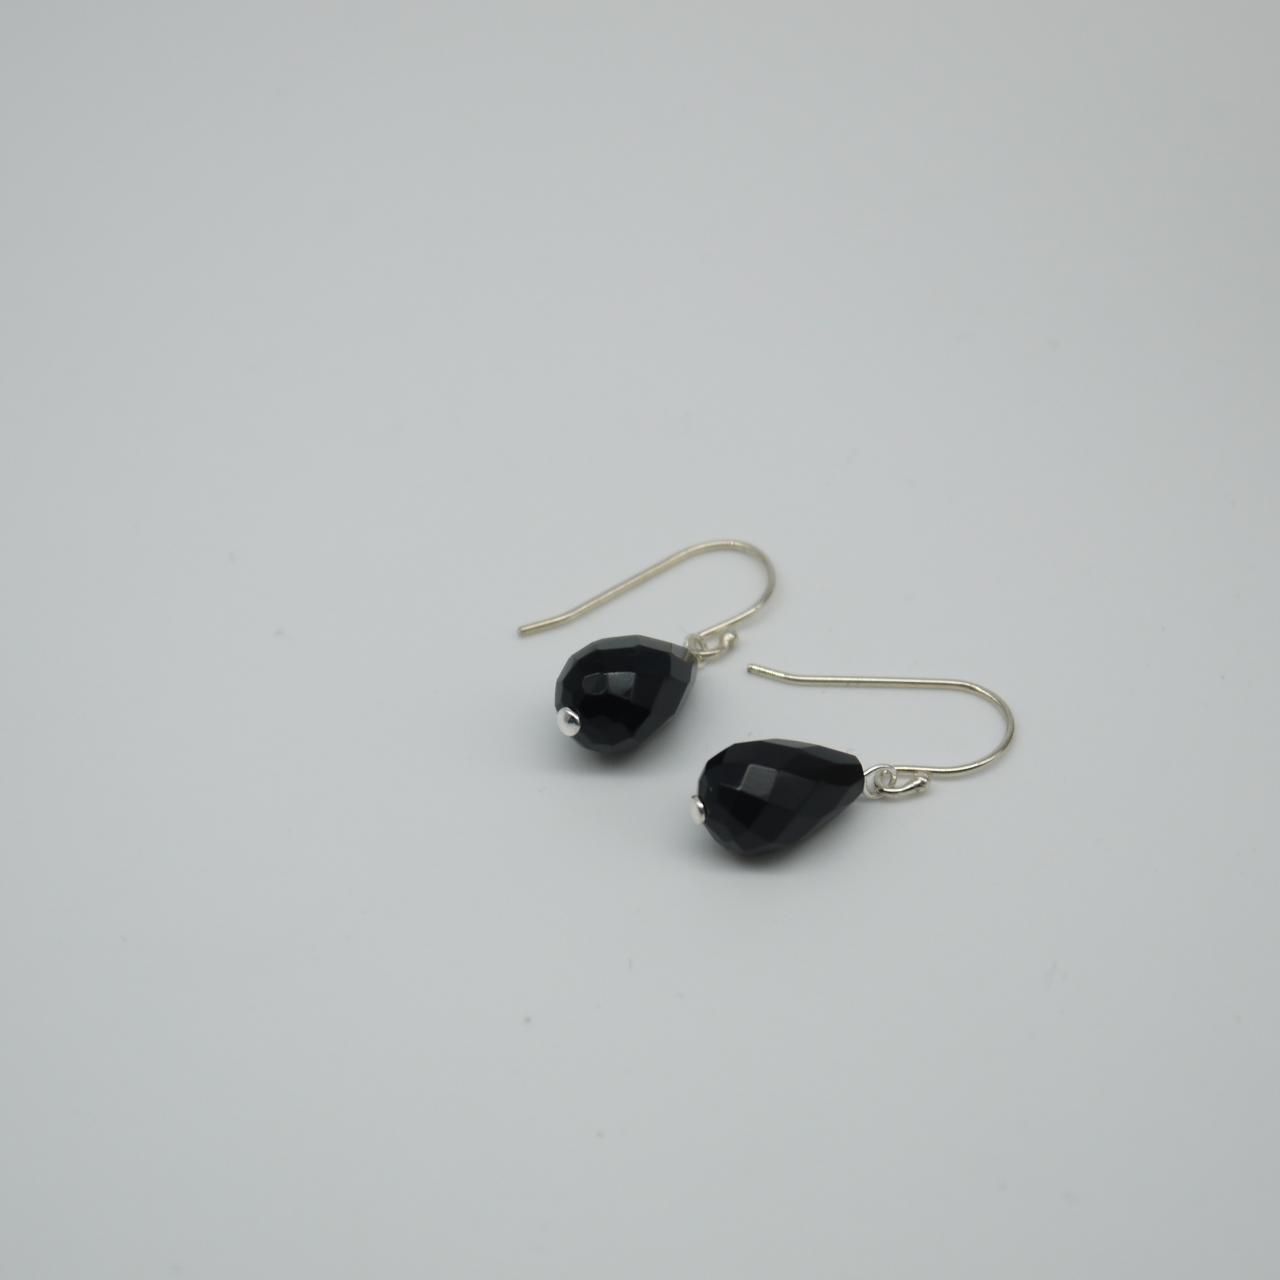 Simply Earrings - Black Agate Earrings - Drop Earrings